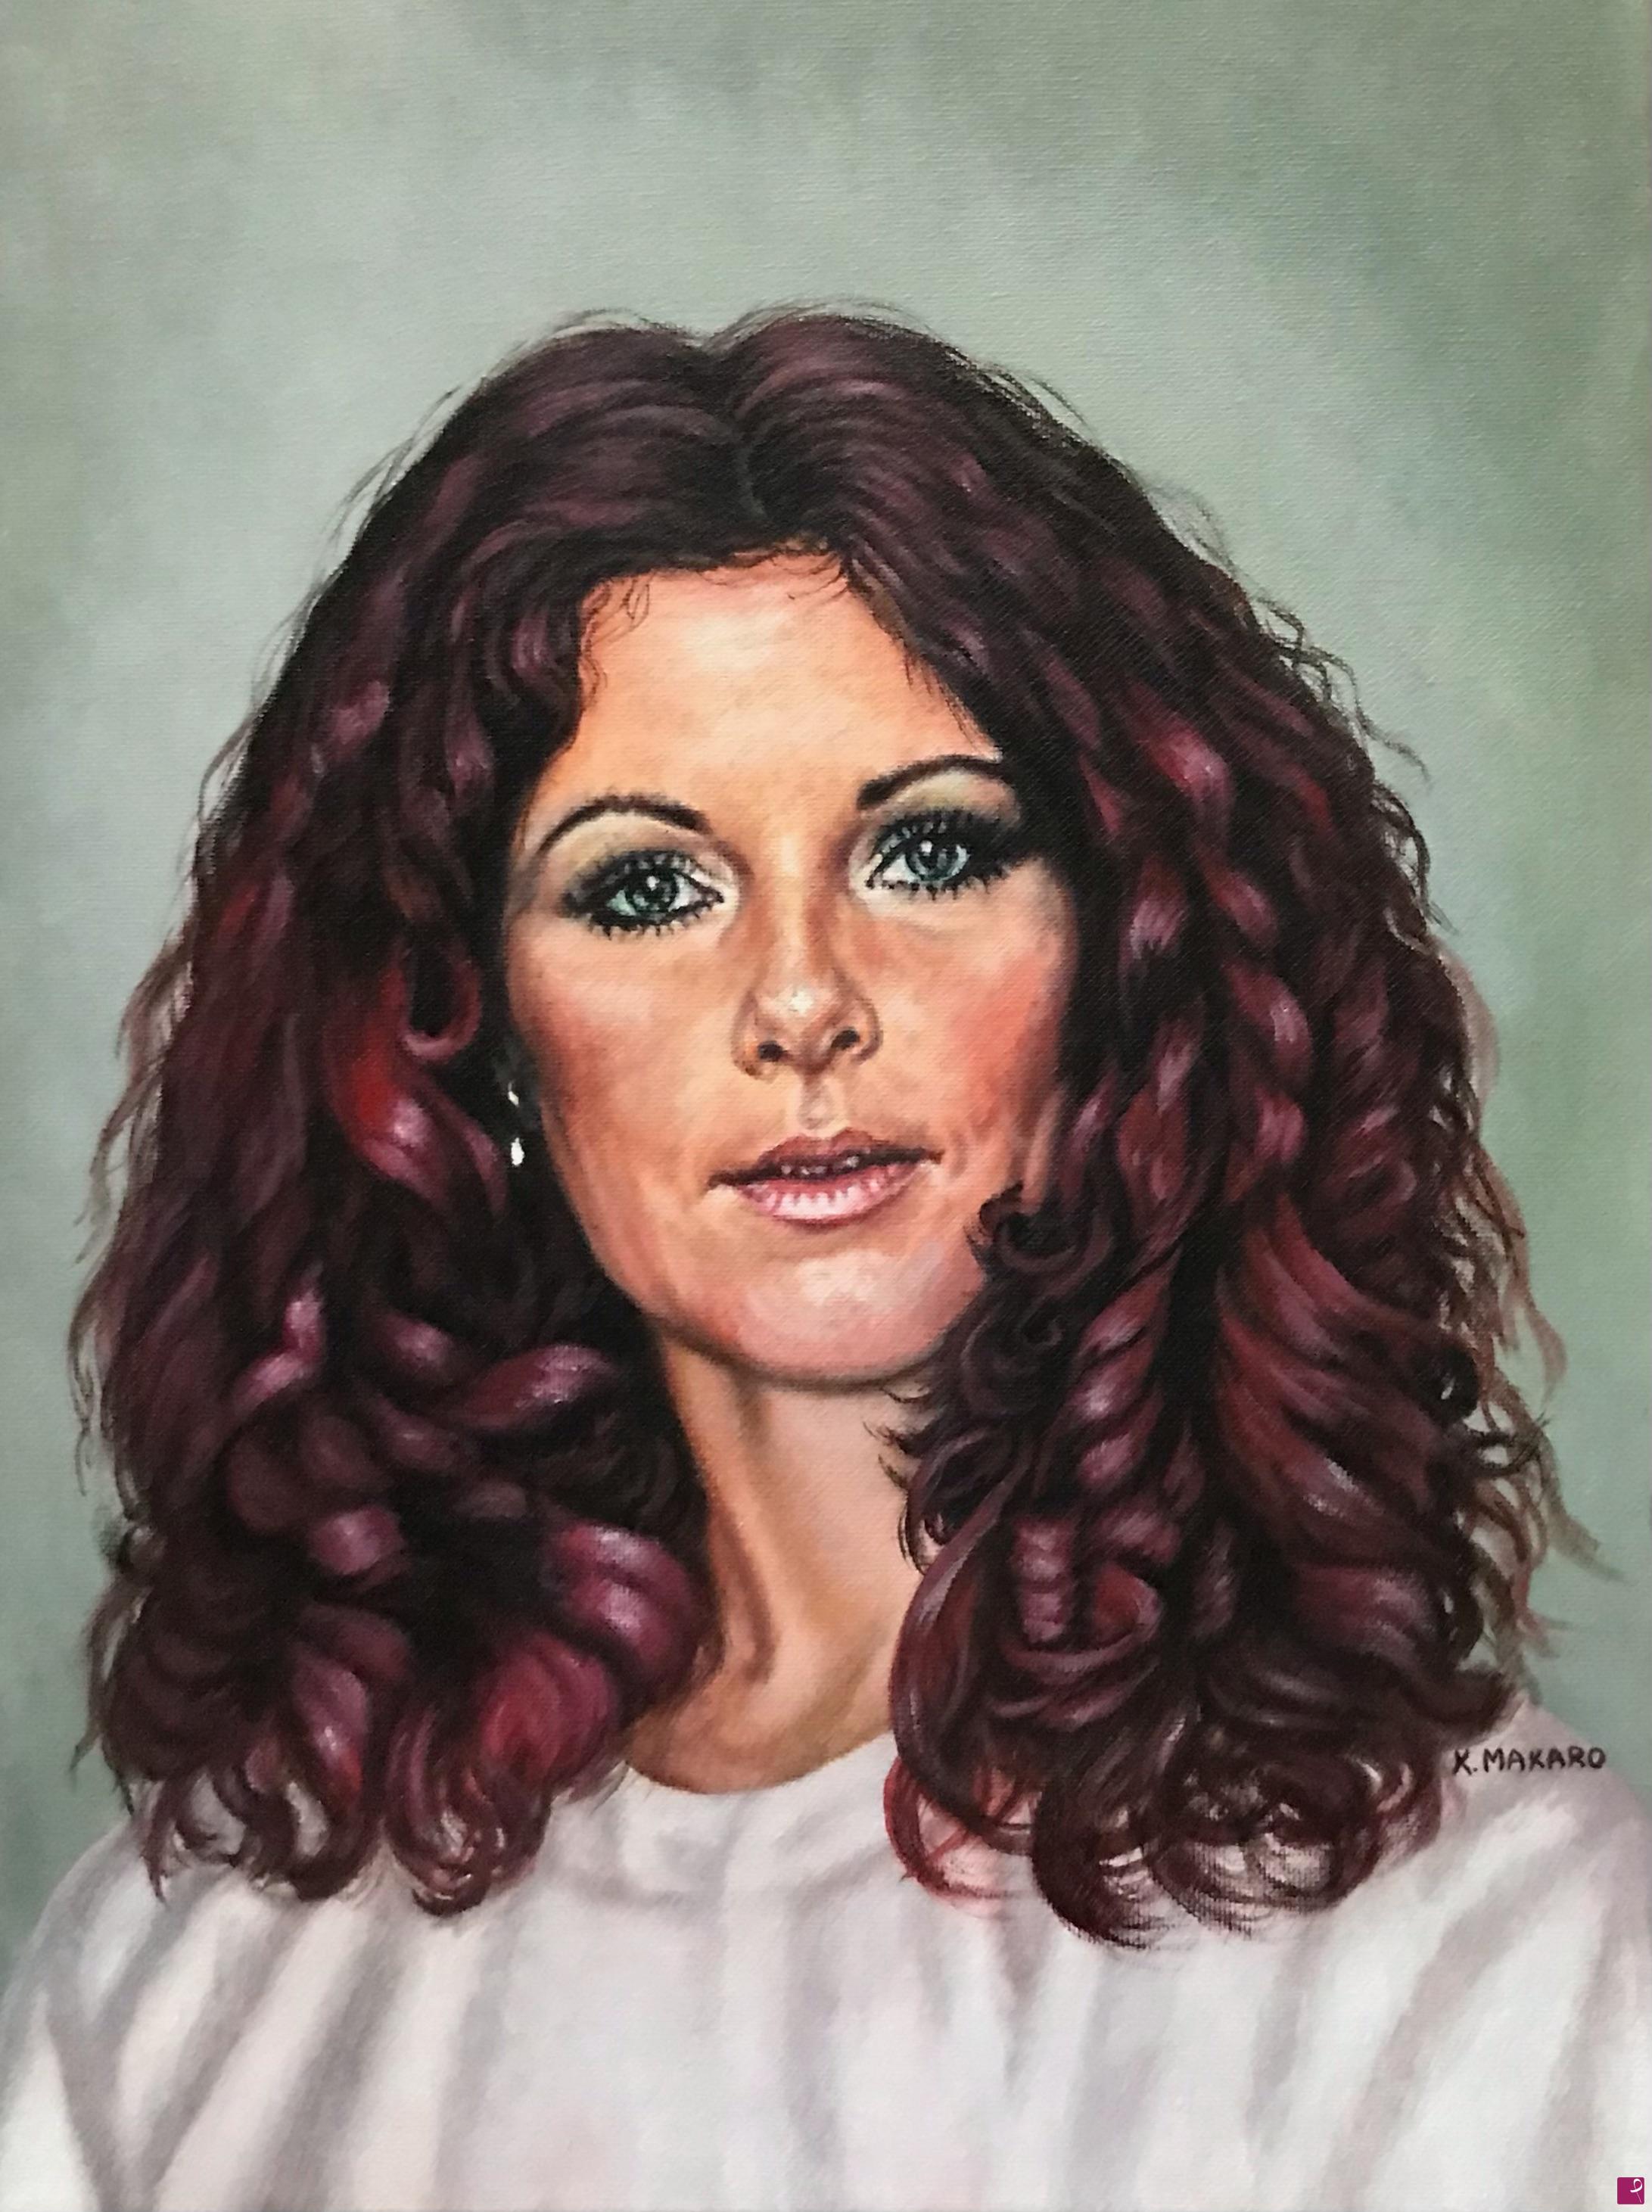 venduto quadro - Anni-Frid Lyngstad - ABBA - ritratto su commissione - Kate  Makaro